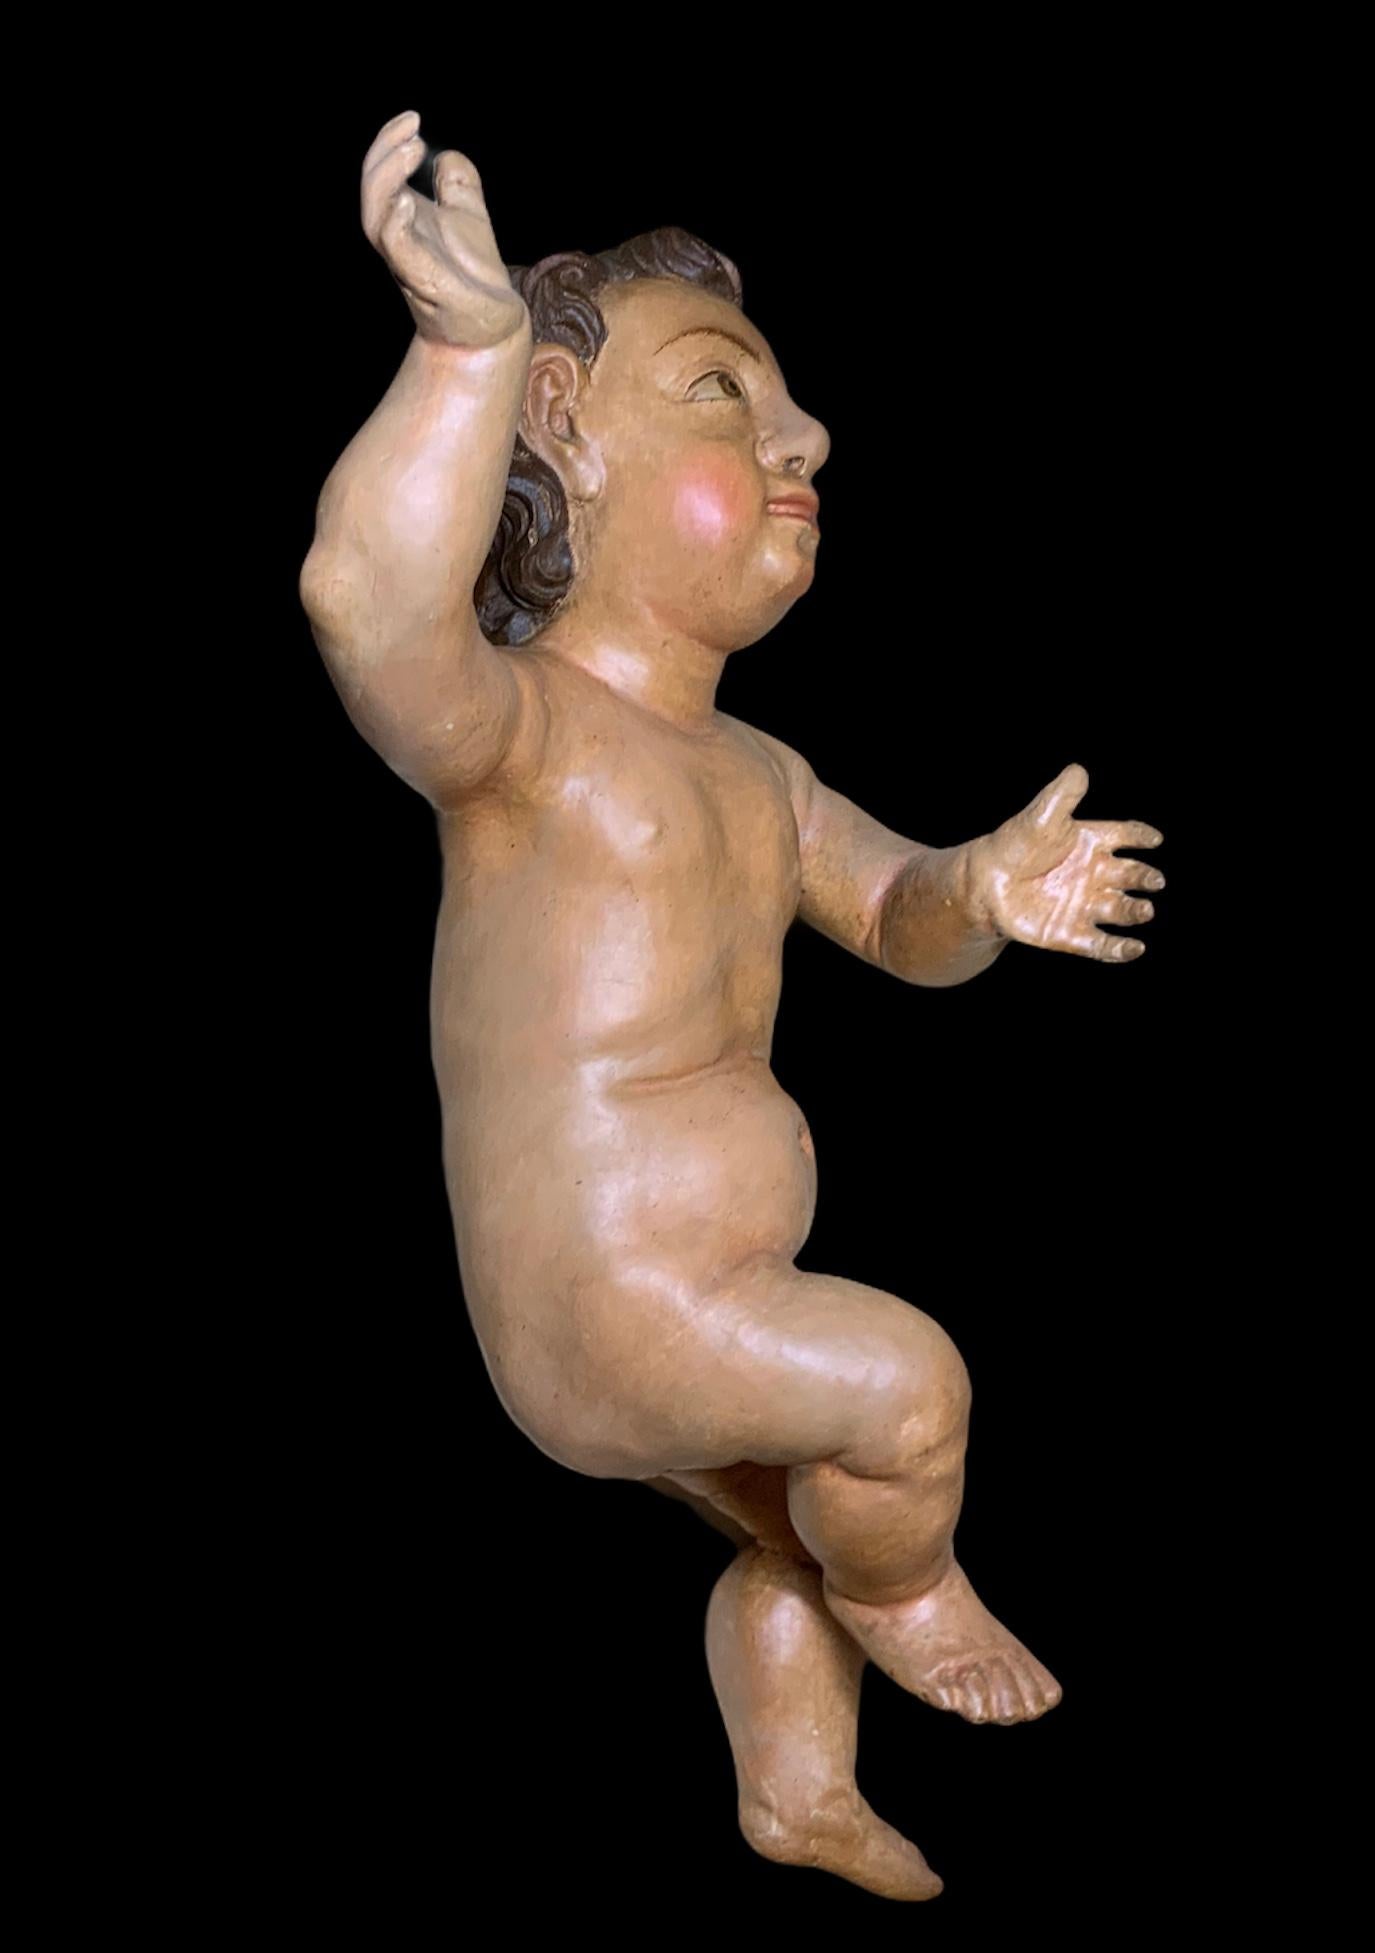 Il s'agit d'un ancien bébé Jésus en bois sculpté et peint à la main par des Espagnols. Il a de grands yeux expressifs et des sourcils peints à la main. Sa chevelure abondante est brune et bouclée. Sa main droite est levée en position de bénédiction